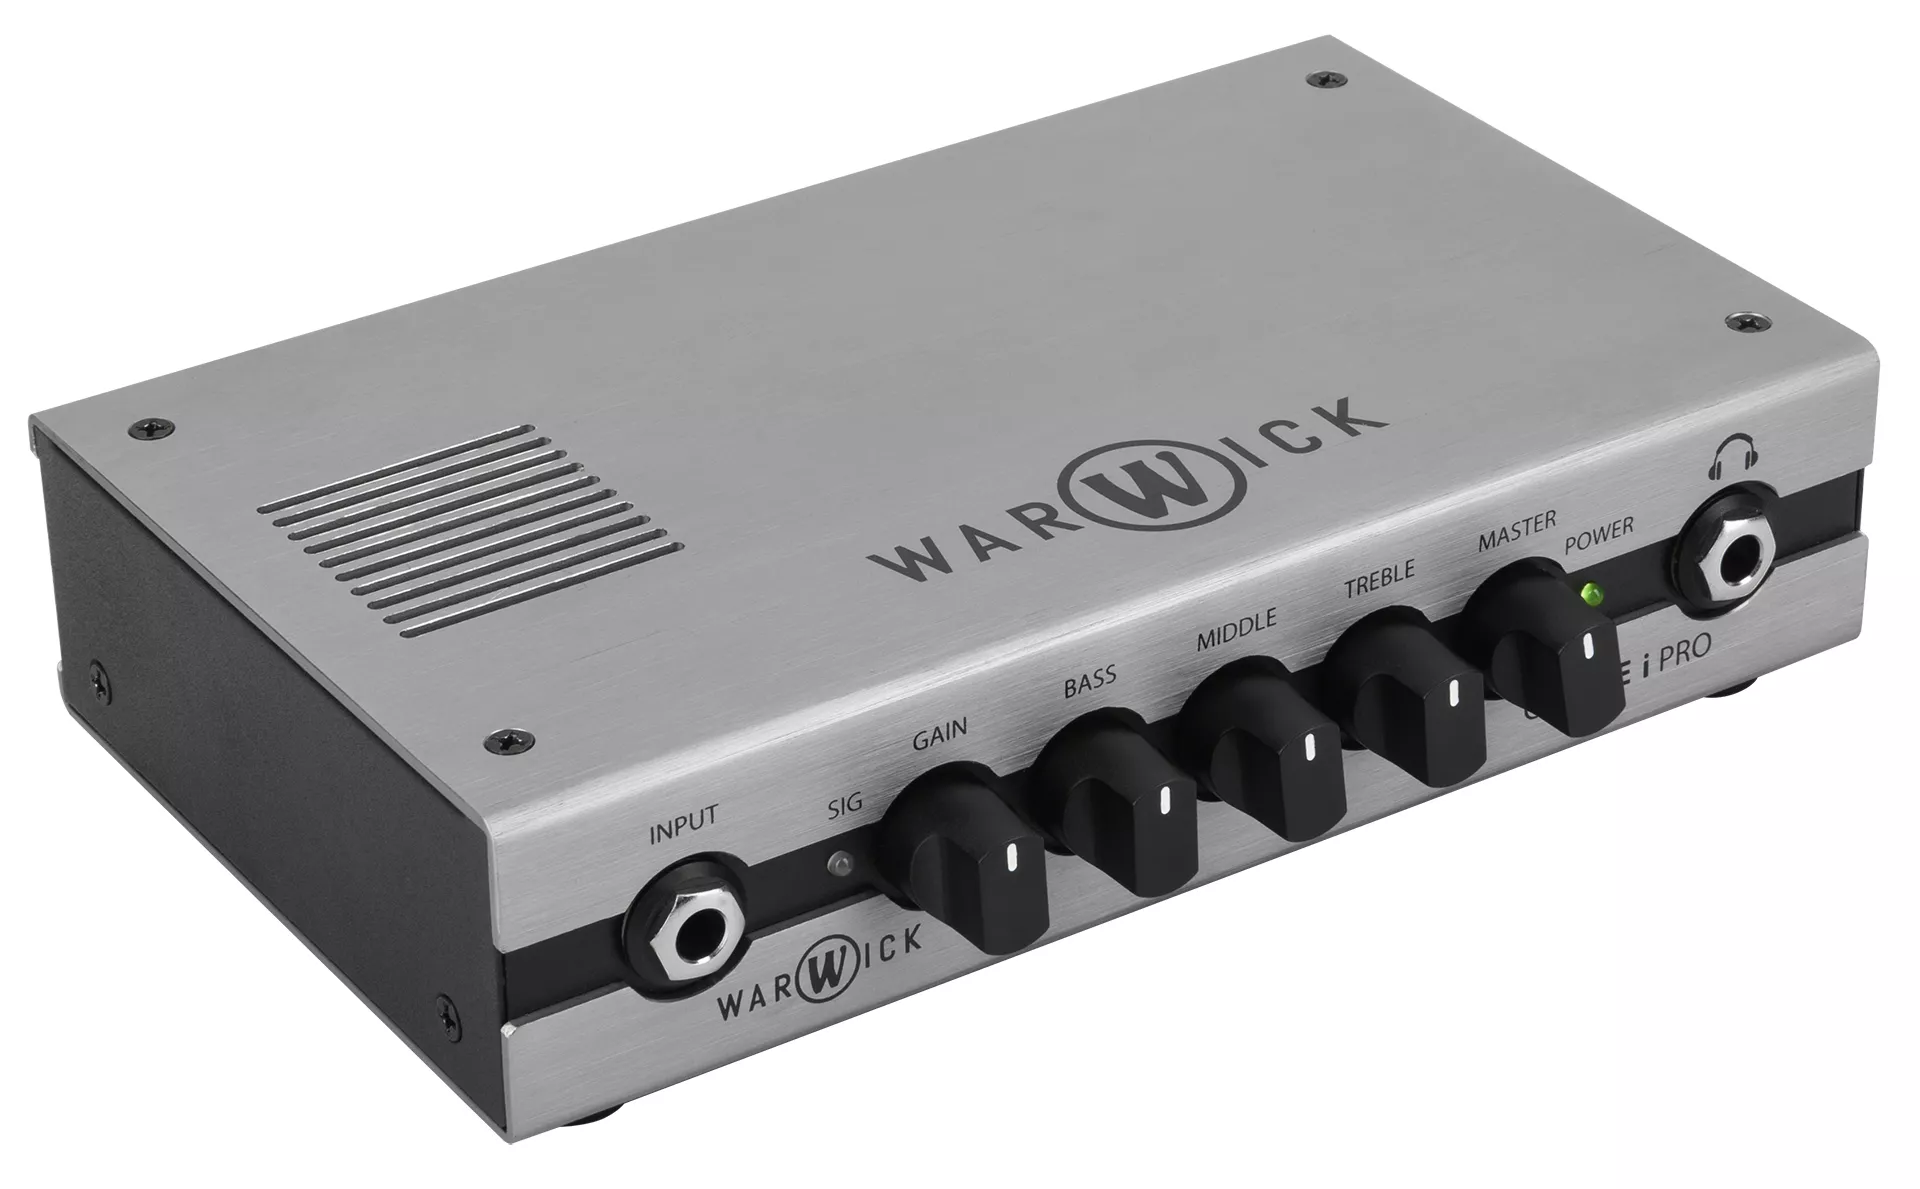 Warwick Gnome I PRO V2 300W USB - Têtes Amplis Basse